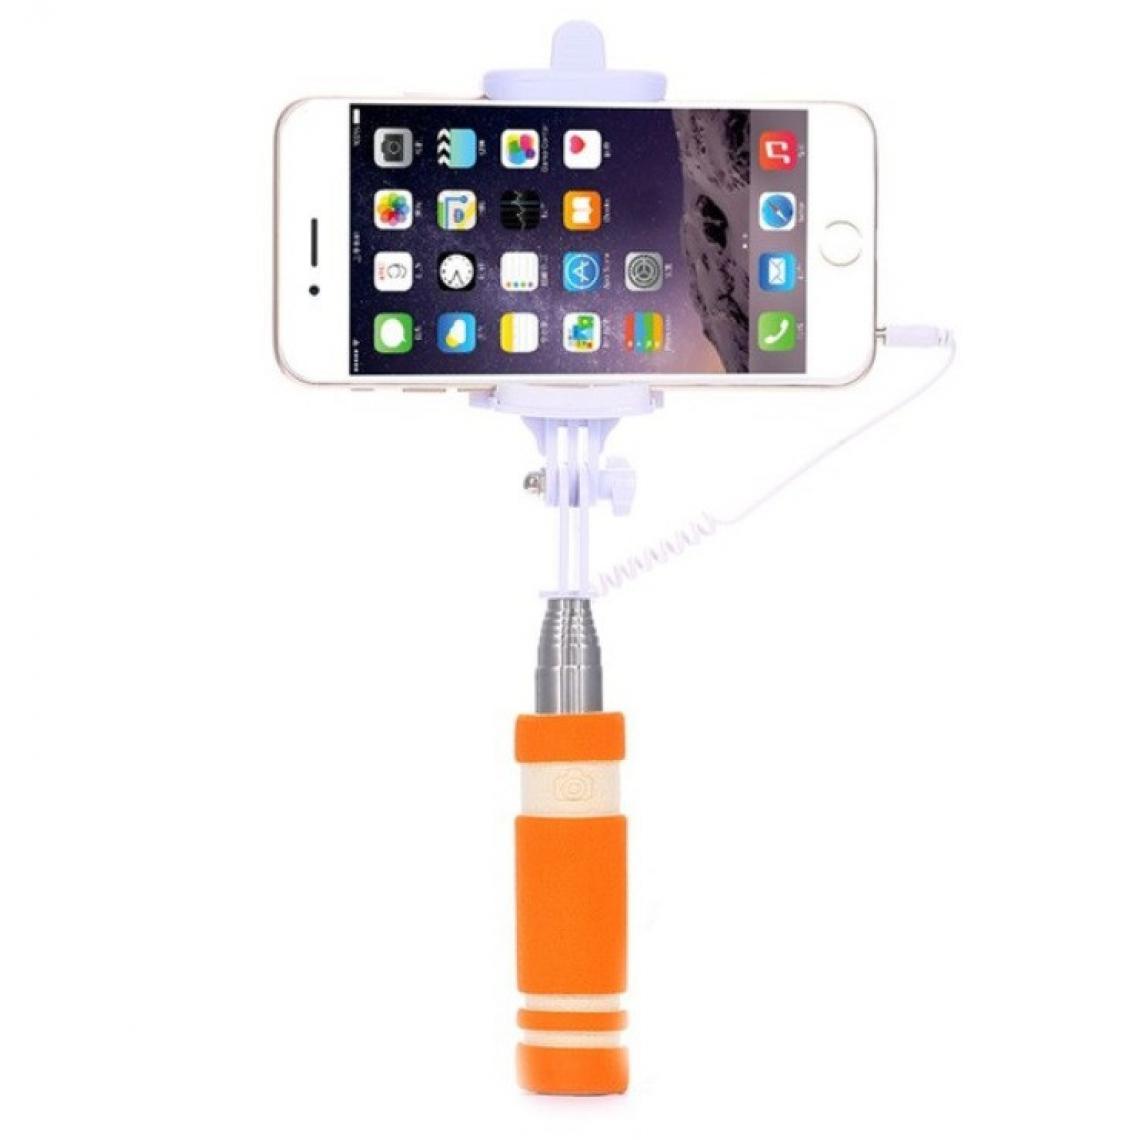 Shot - Mini Perche Selfie pour "SAMSUNG Galaxy A41" Smartphone avec Cable Jack Selfie Stick Android IOS Reglable Bouton Photo (ORANGE) - Autres accessoires smartphone